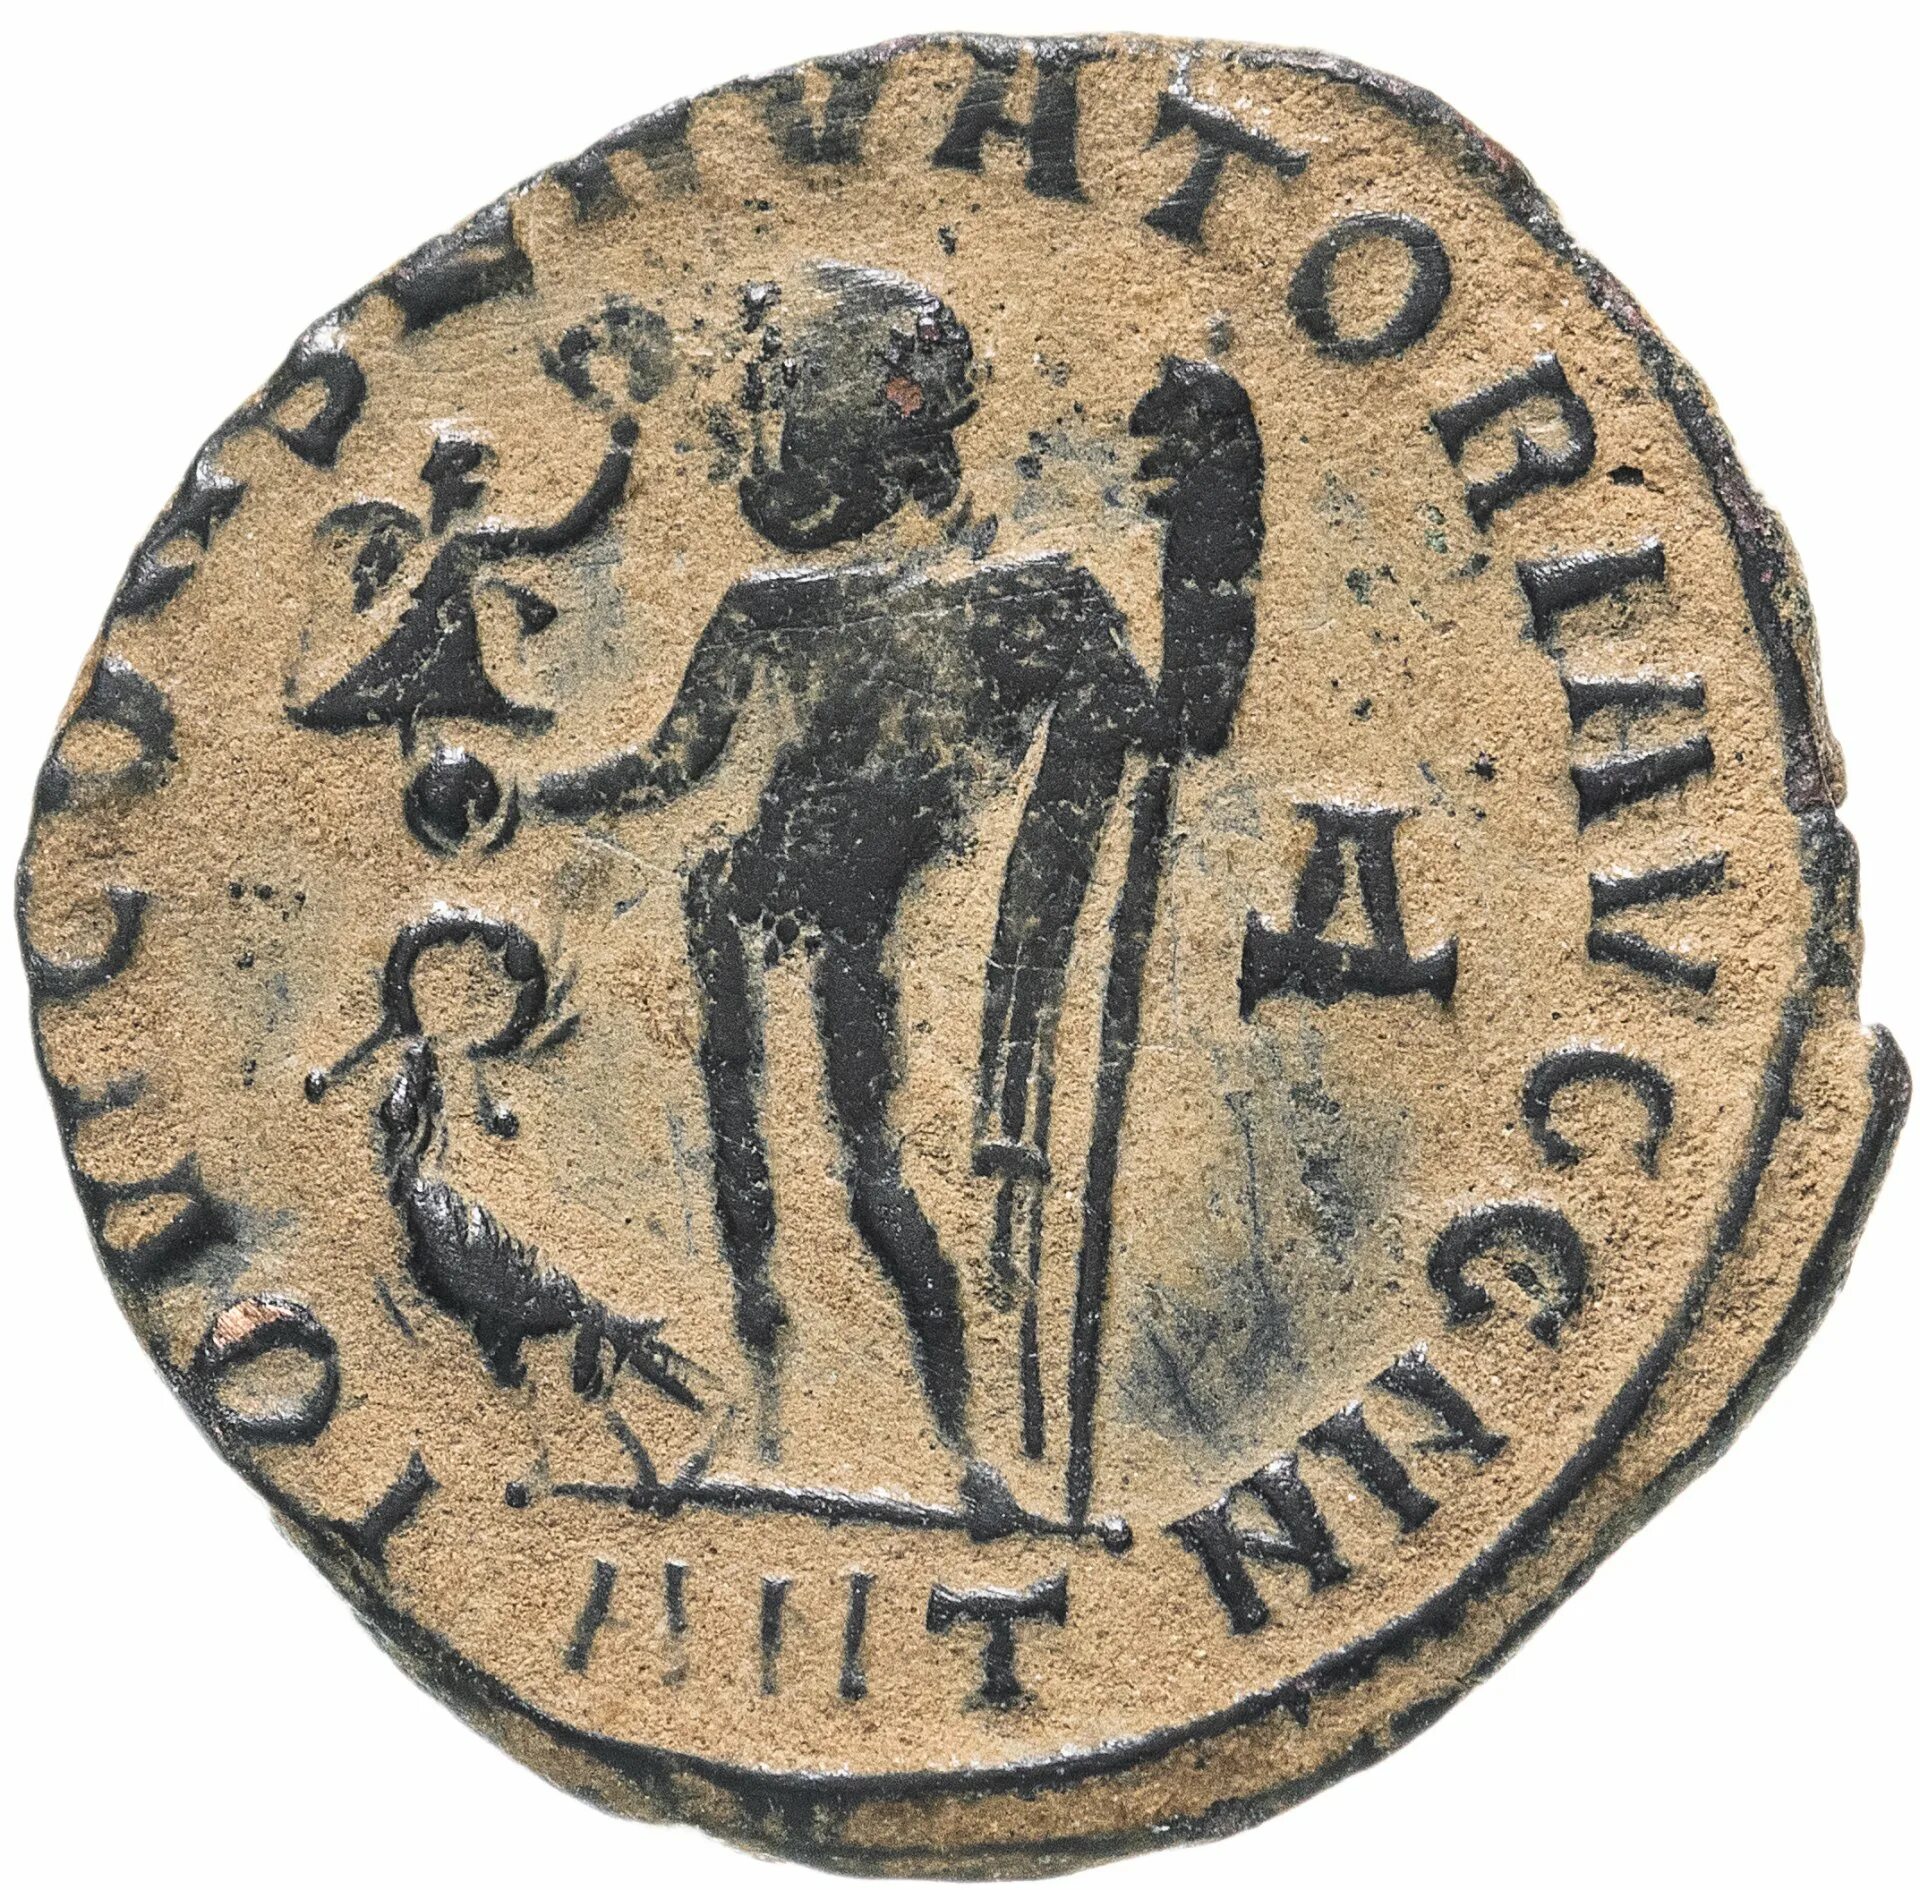 Римская Империя нуммий. Римская монета Лициний 308-324 г. Древний Рим Лициний монета нуммий. Монеты из меди в древности. Квинт лициний 4